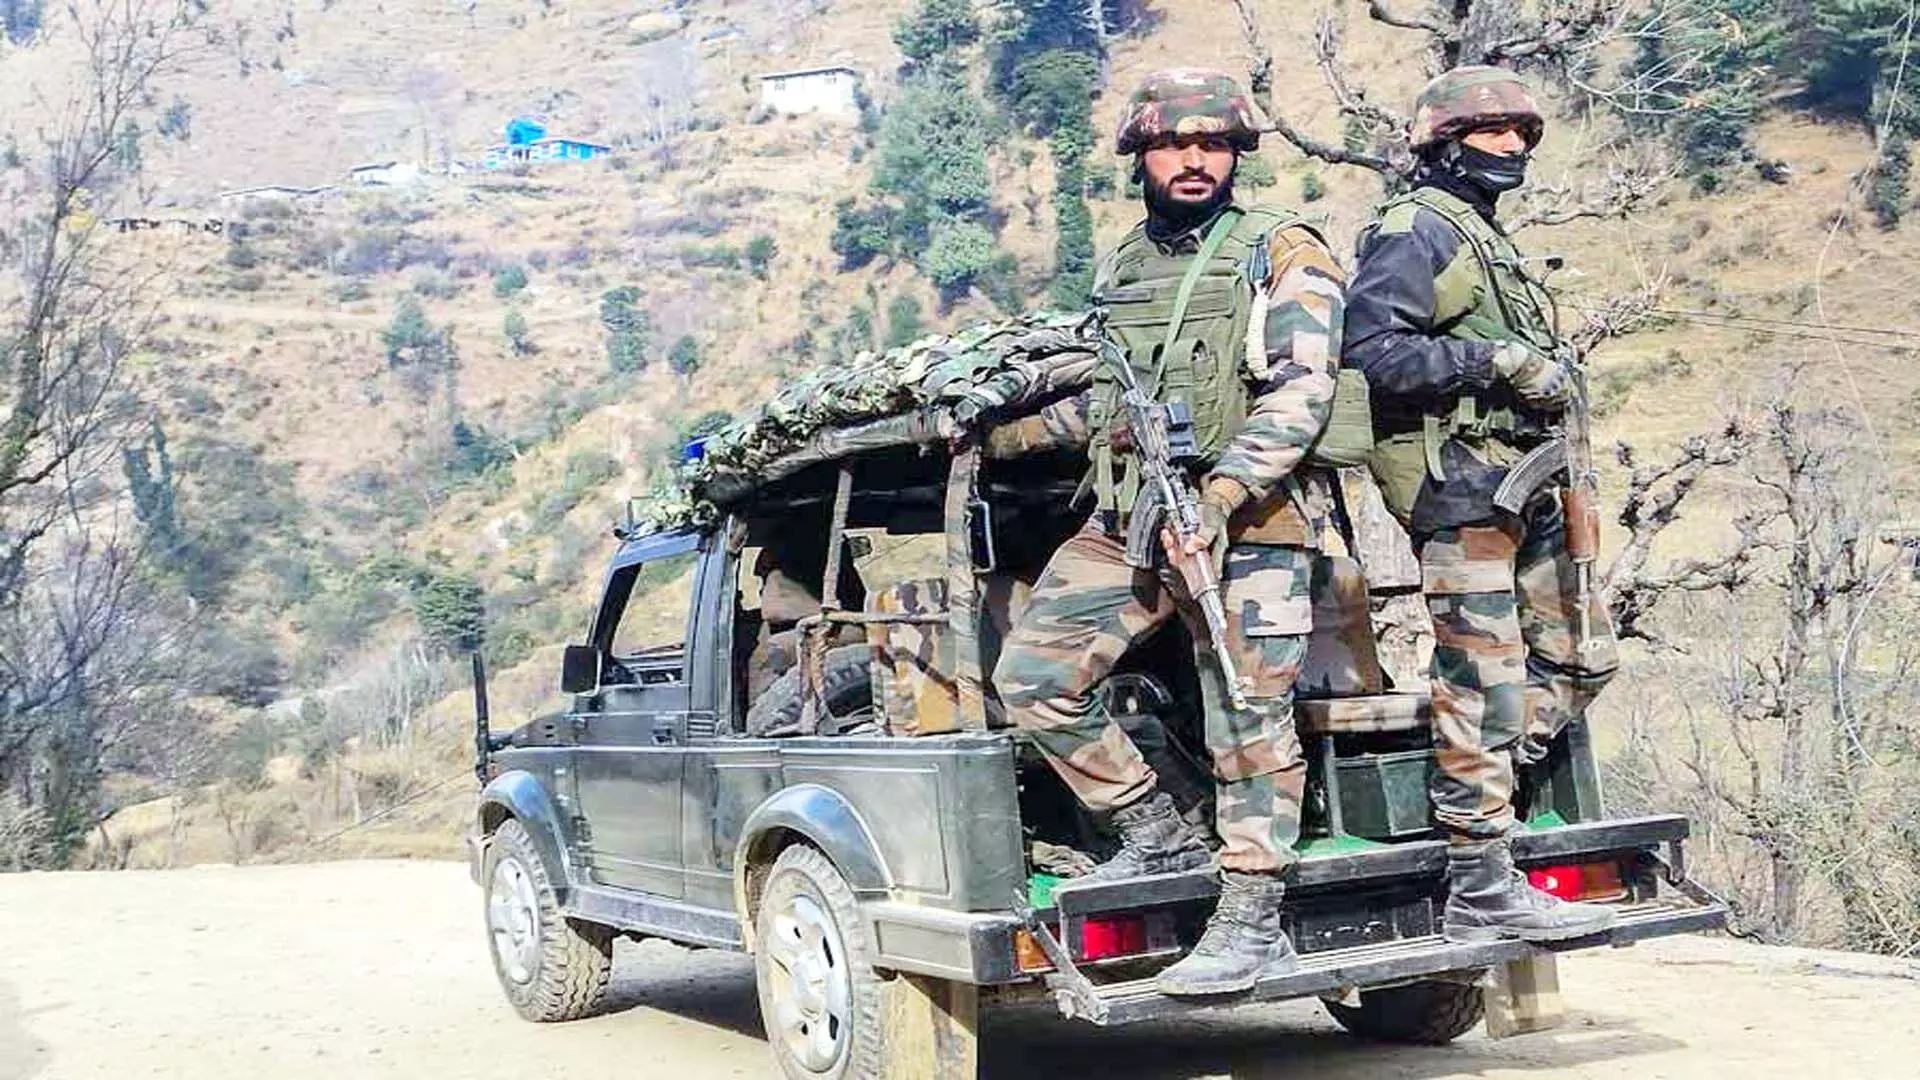 प्रधानमंत्री नरेंद्र मोदी के जम्मू-कश्मीर दौरे से पहले कश्मीर में सुरक्षा बढ़ा दी